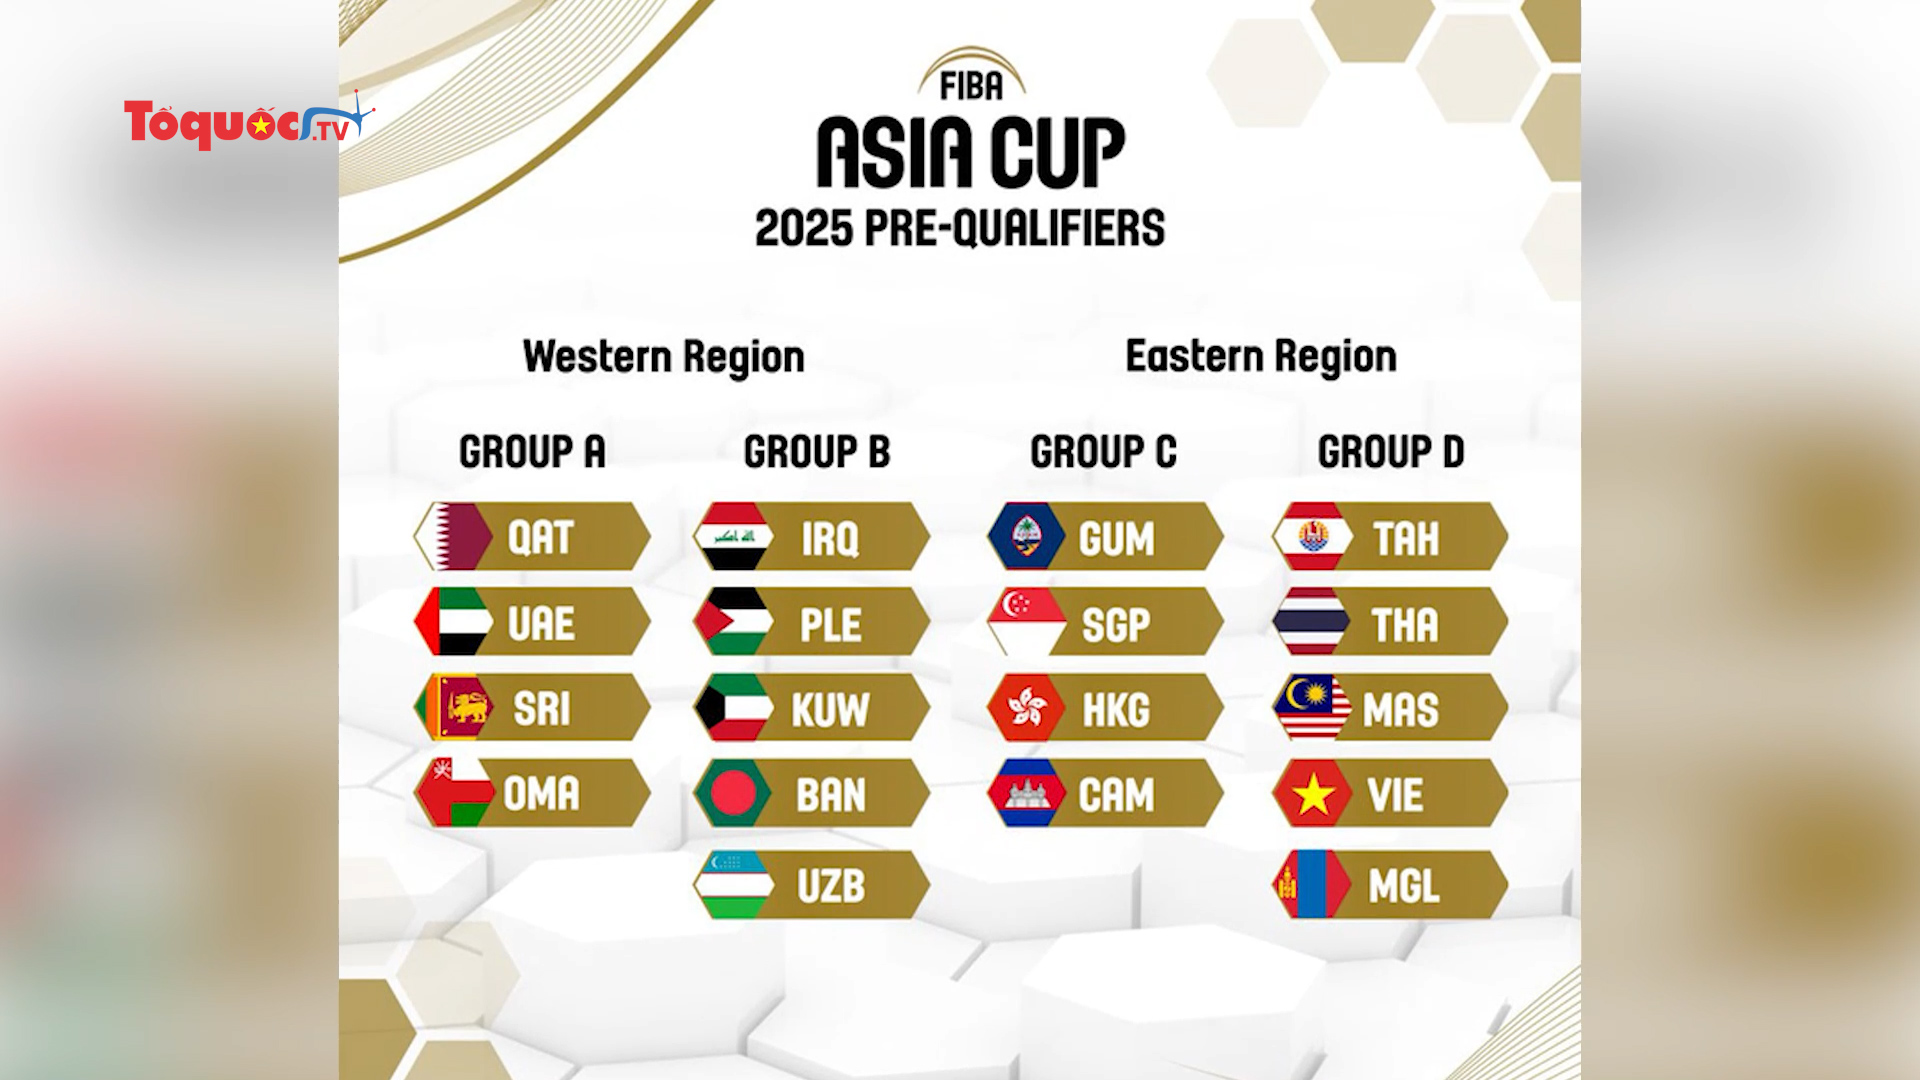 Đội tuyển bóng rổ Việt Nam tham dự vòng sơ loại FIBA Asia Cup 2025